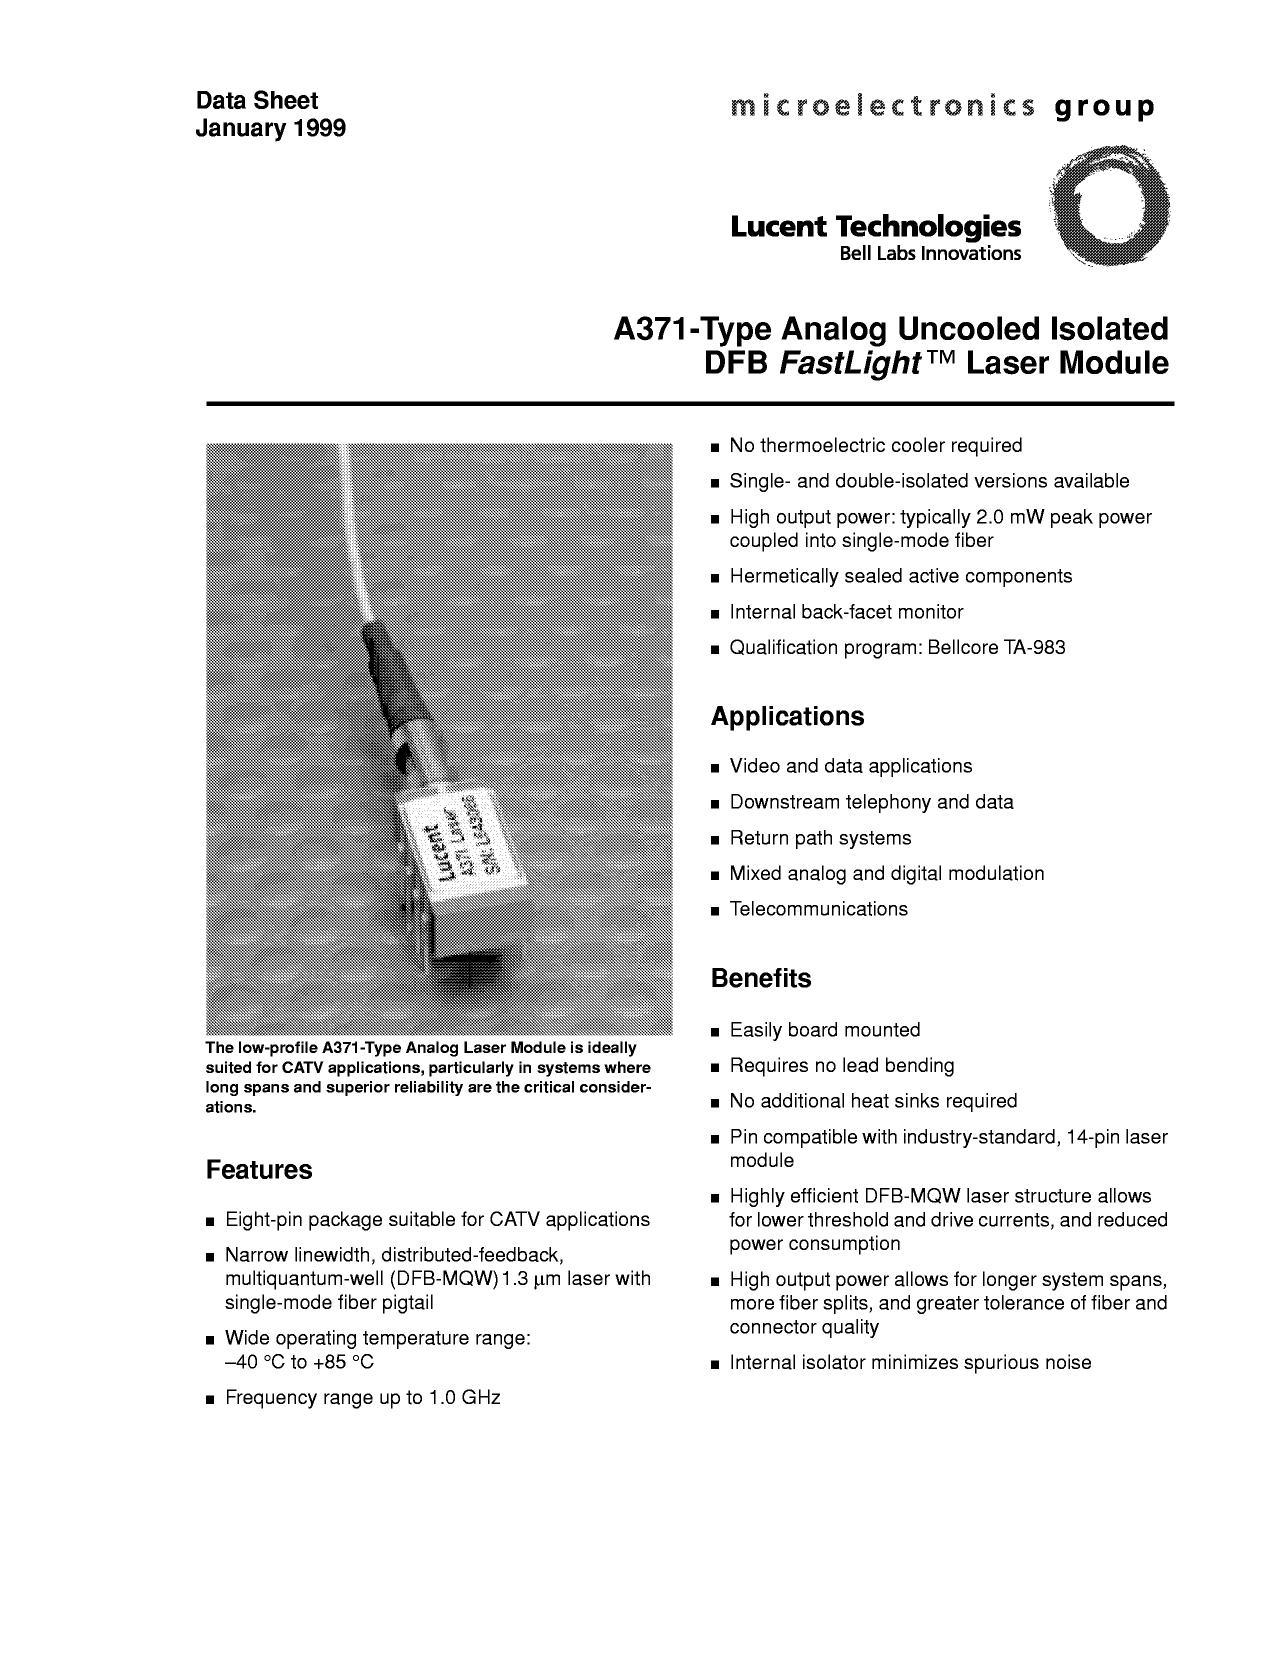 a371-type-analog-uncooled-isolated-dfb-fastlight-laser-module-datasheet.pdf